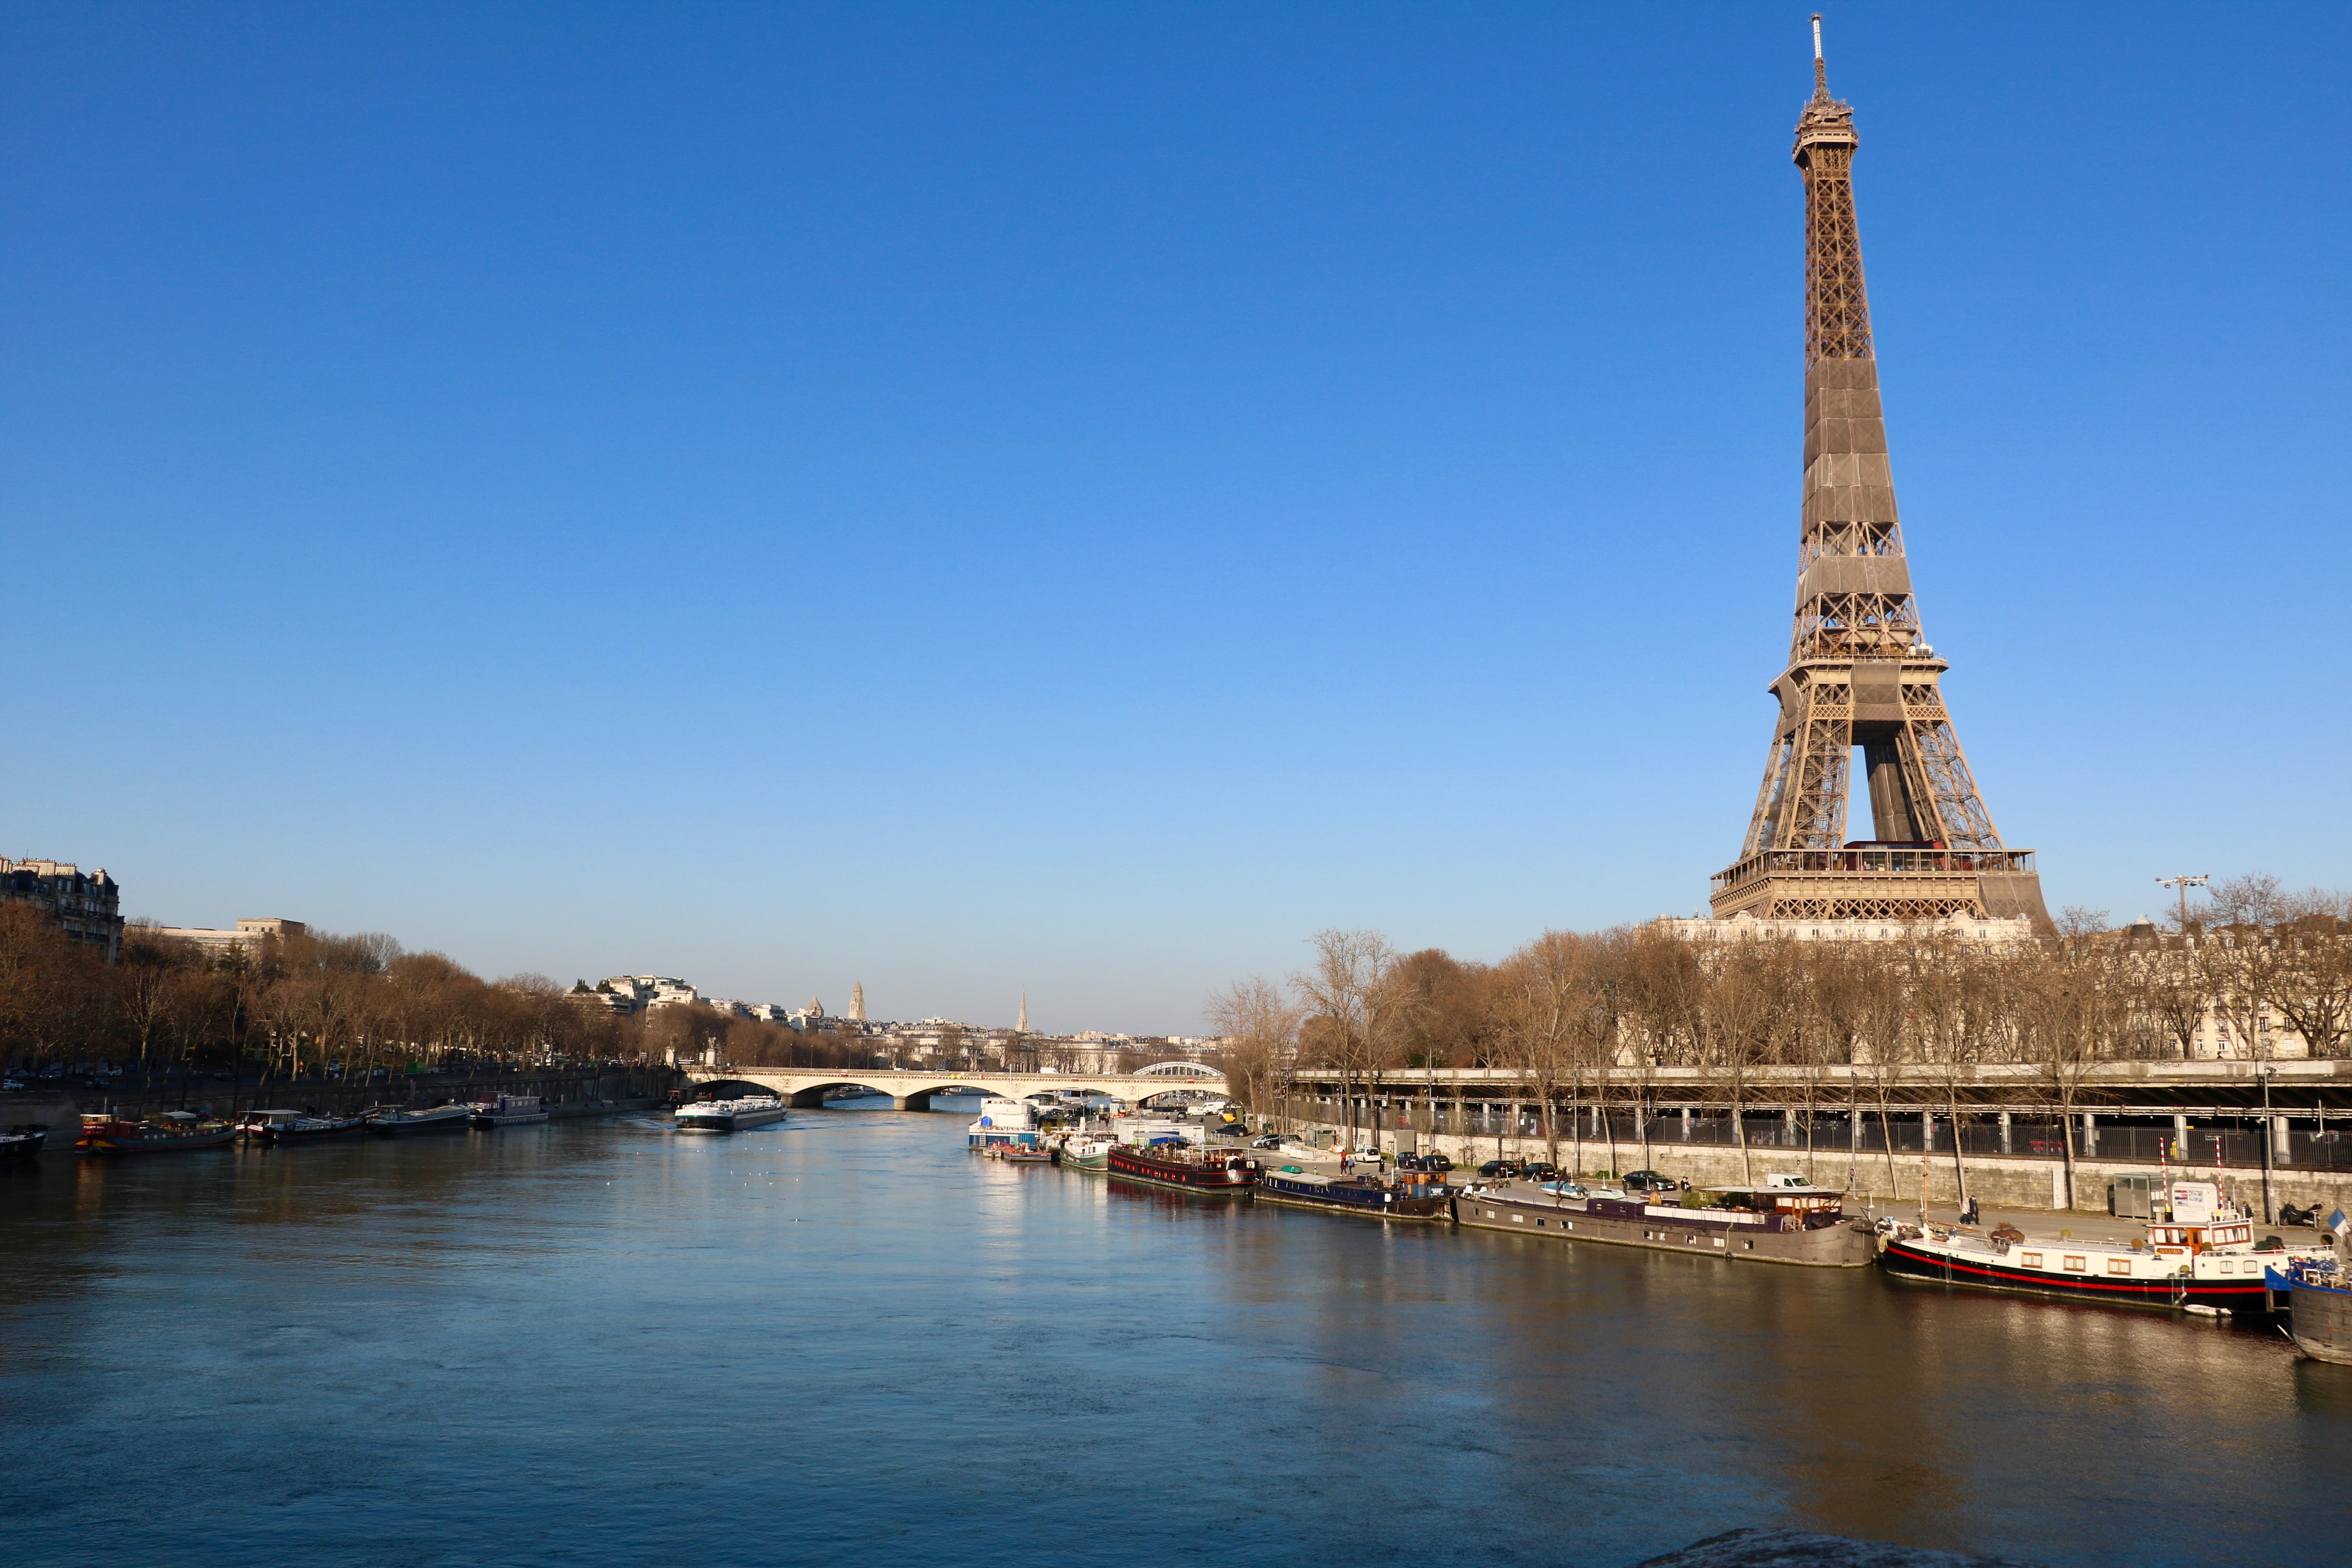 Admire the scenic view of the Seine River